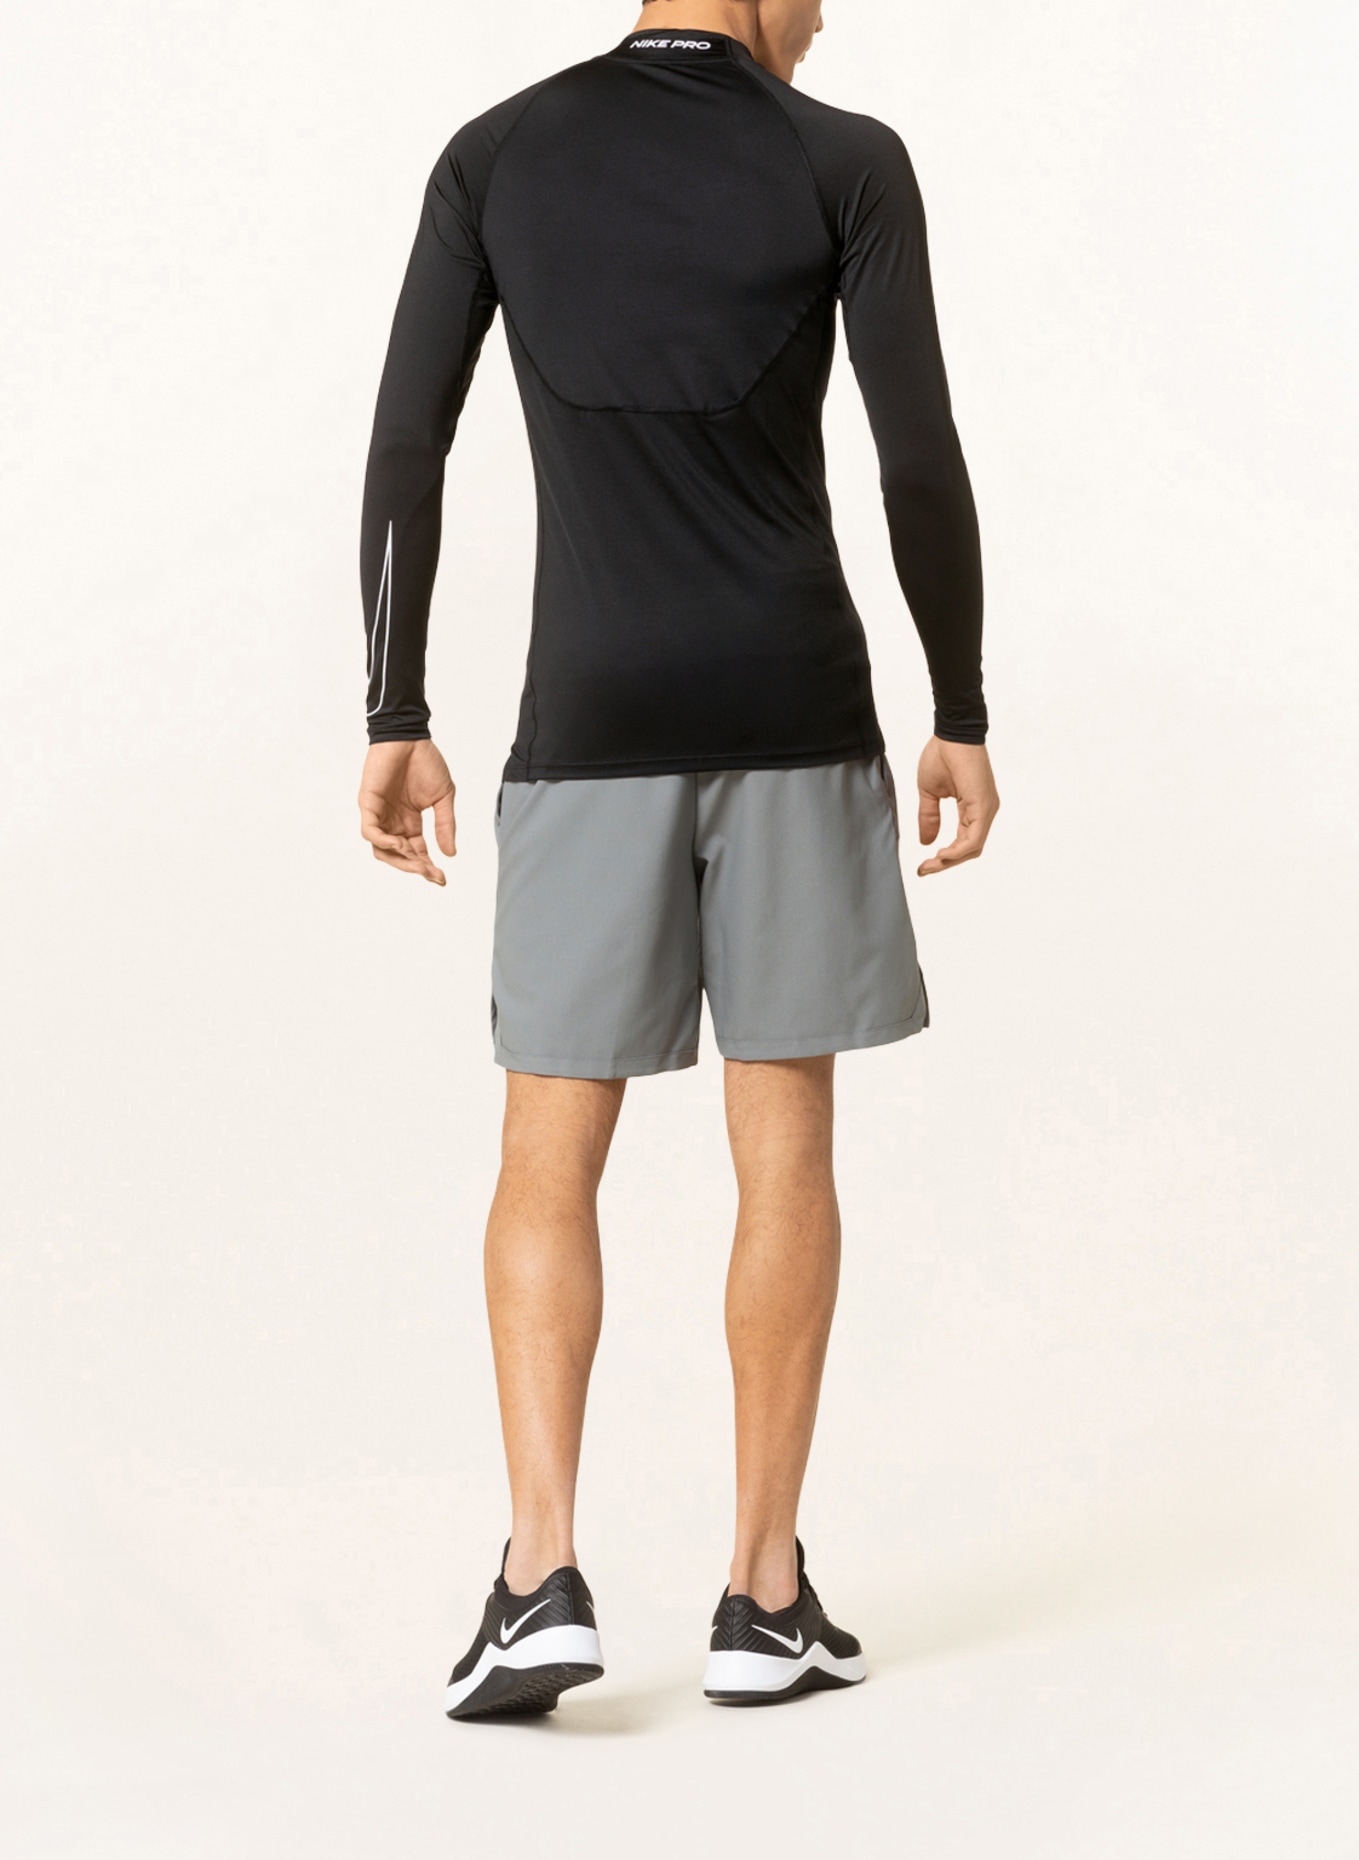 Nike Long sleeve shirt PRO DRI-FIT, Color: BLACK (Image 3)